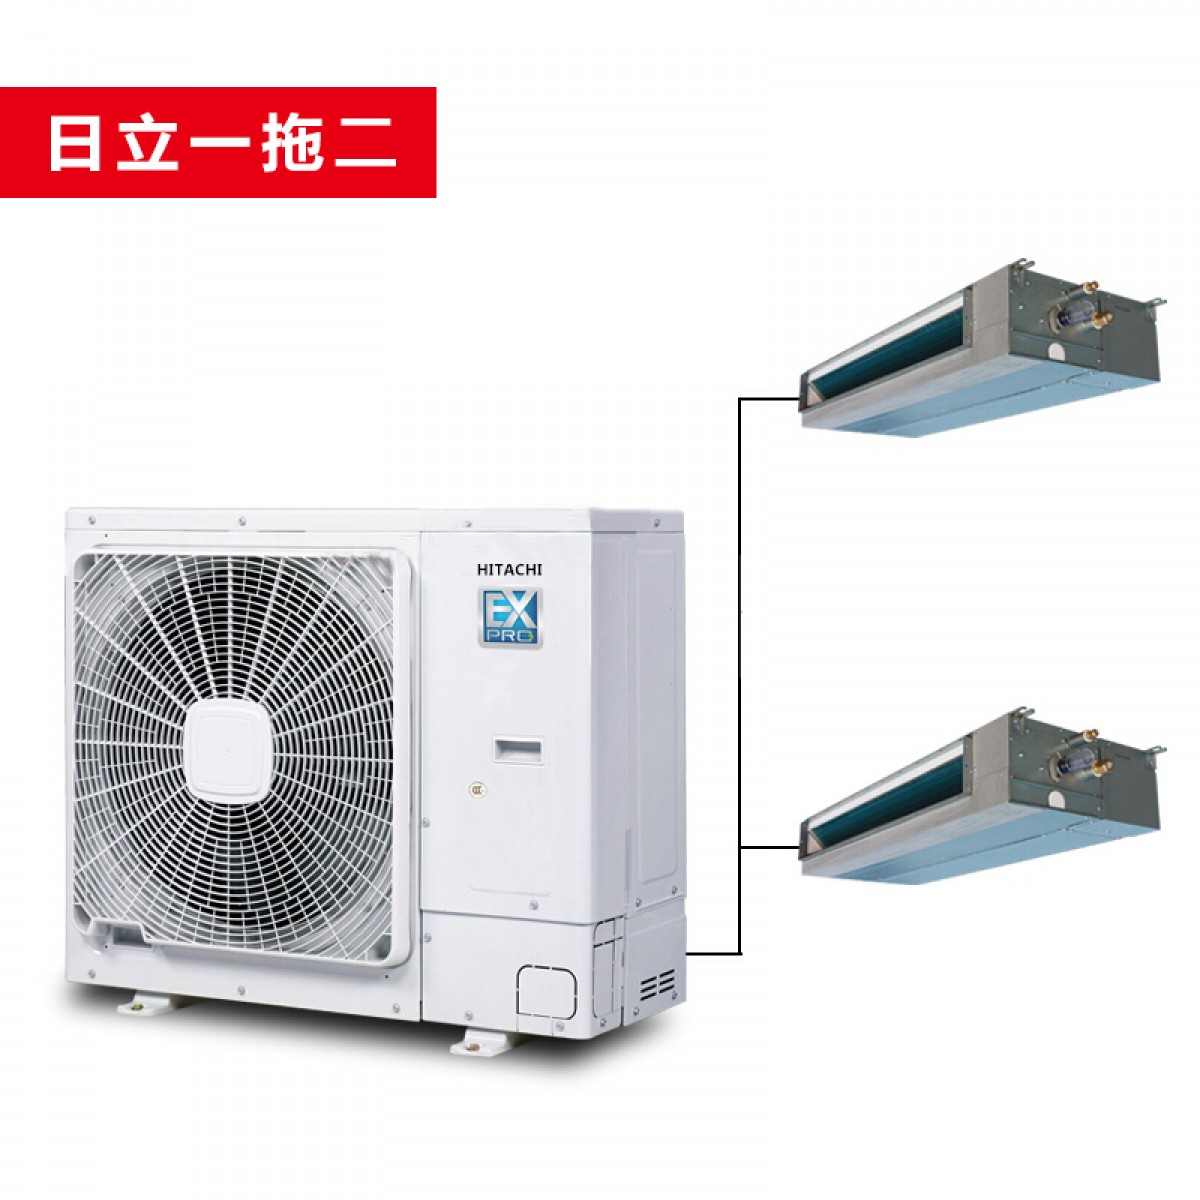 HITACHI日立中央空调  EX-PRO系列  天花板内置薄型风管机 RPIZ系列标准型